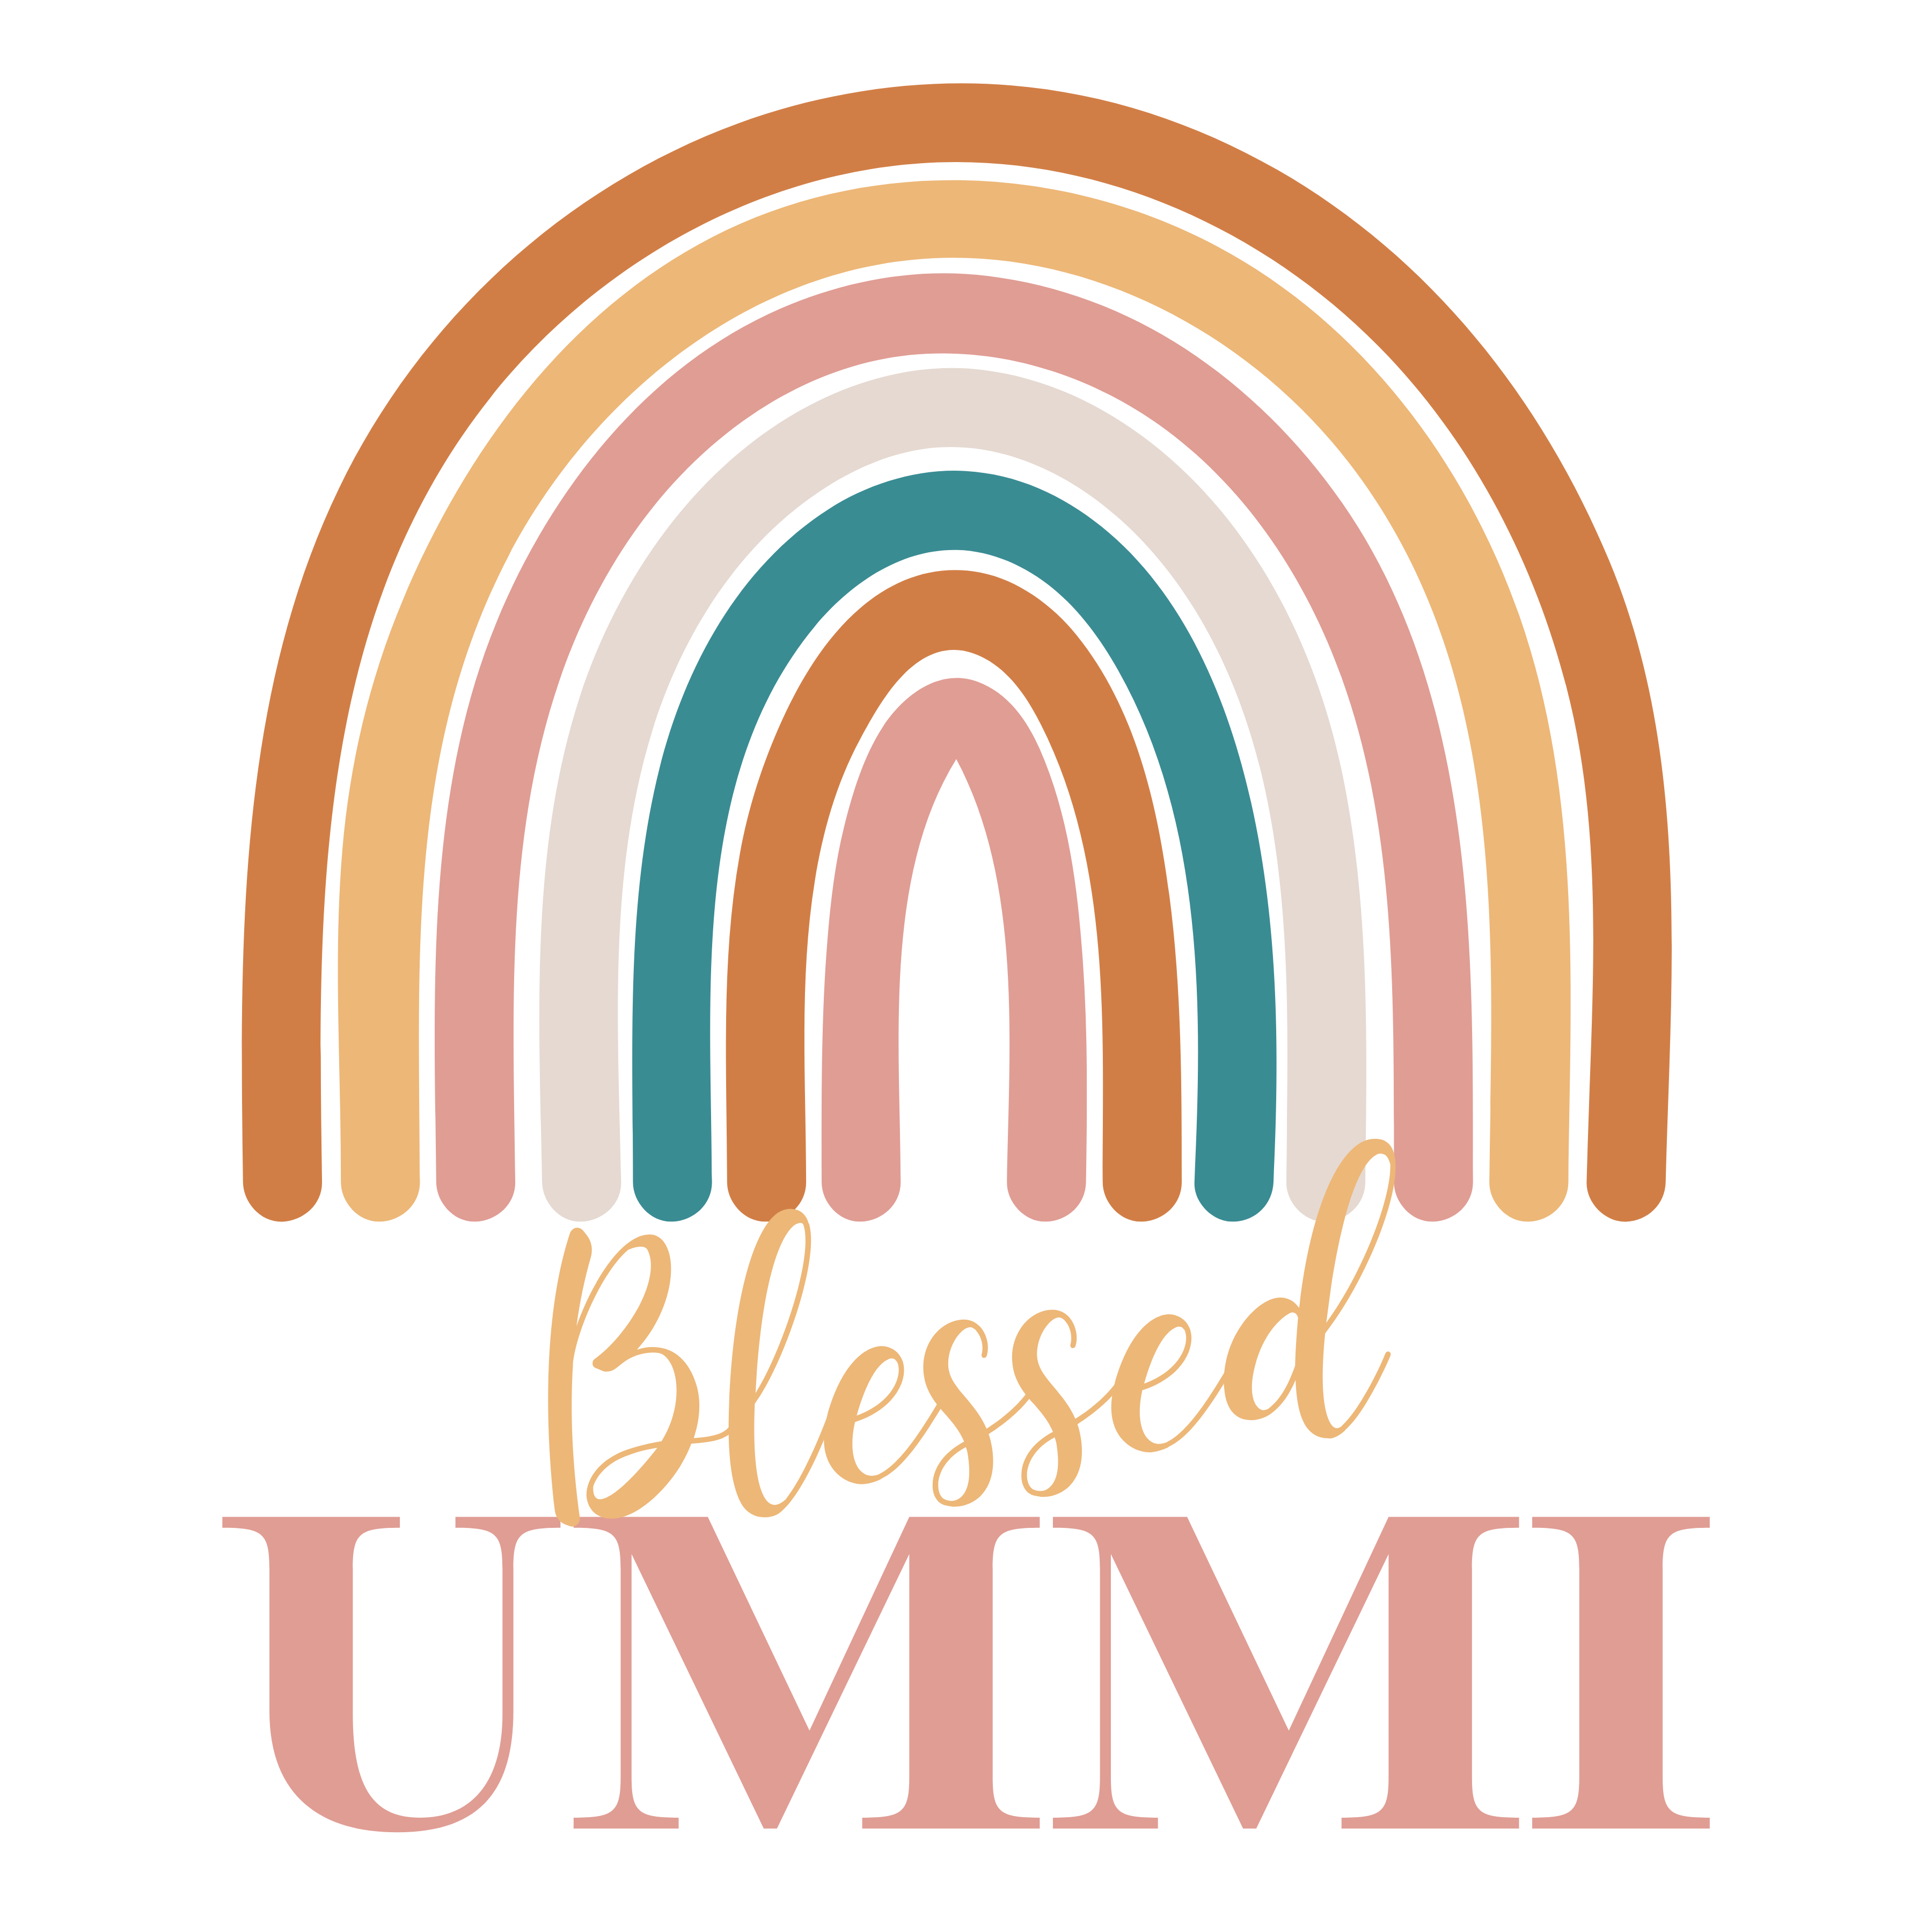 Umama / Ummi Mugs